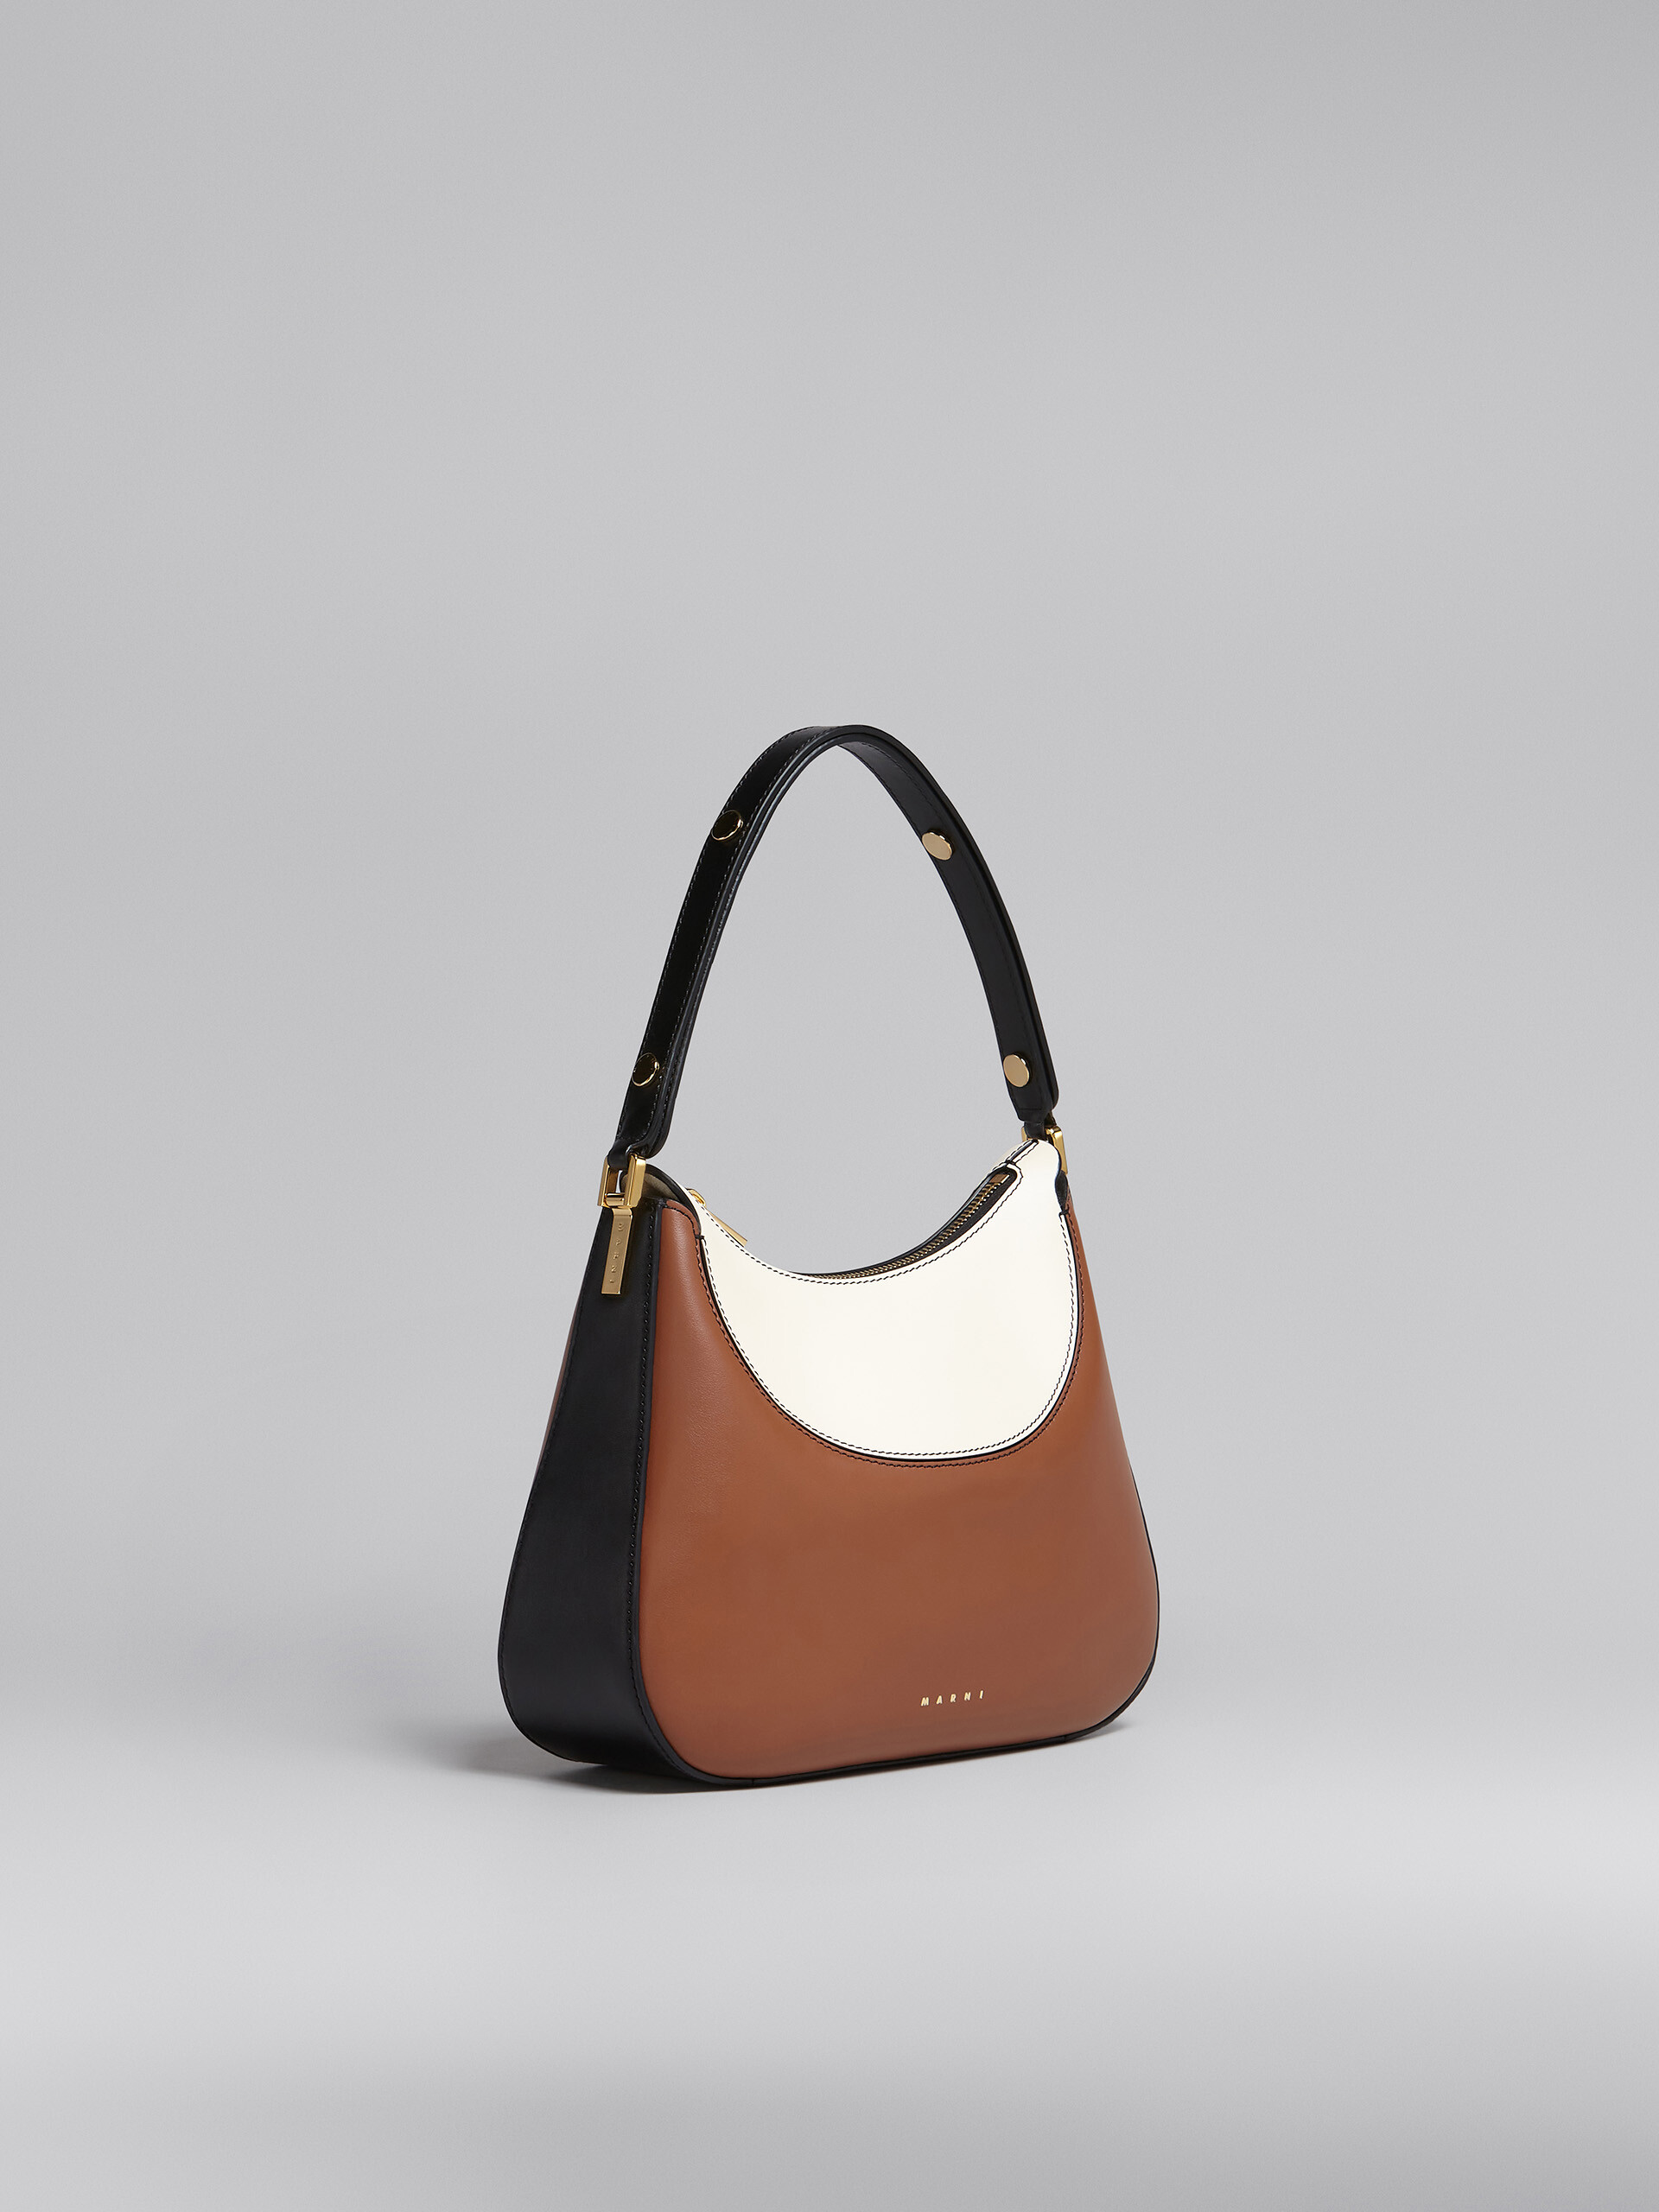 Petit sac Milano en cuir marron, noir et blanc - Sacs à main - Image 6